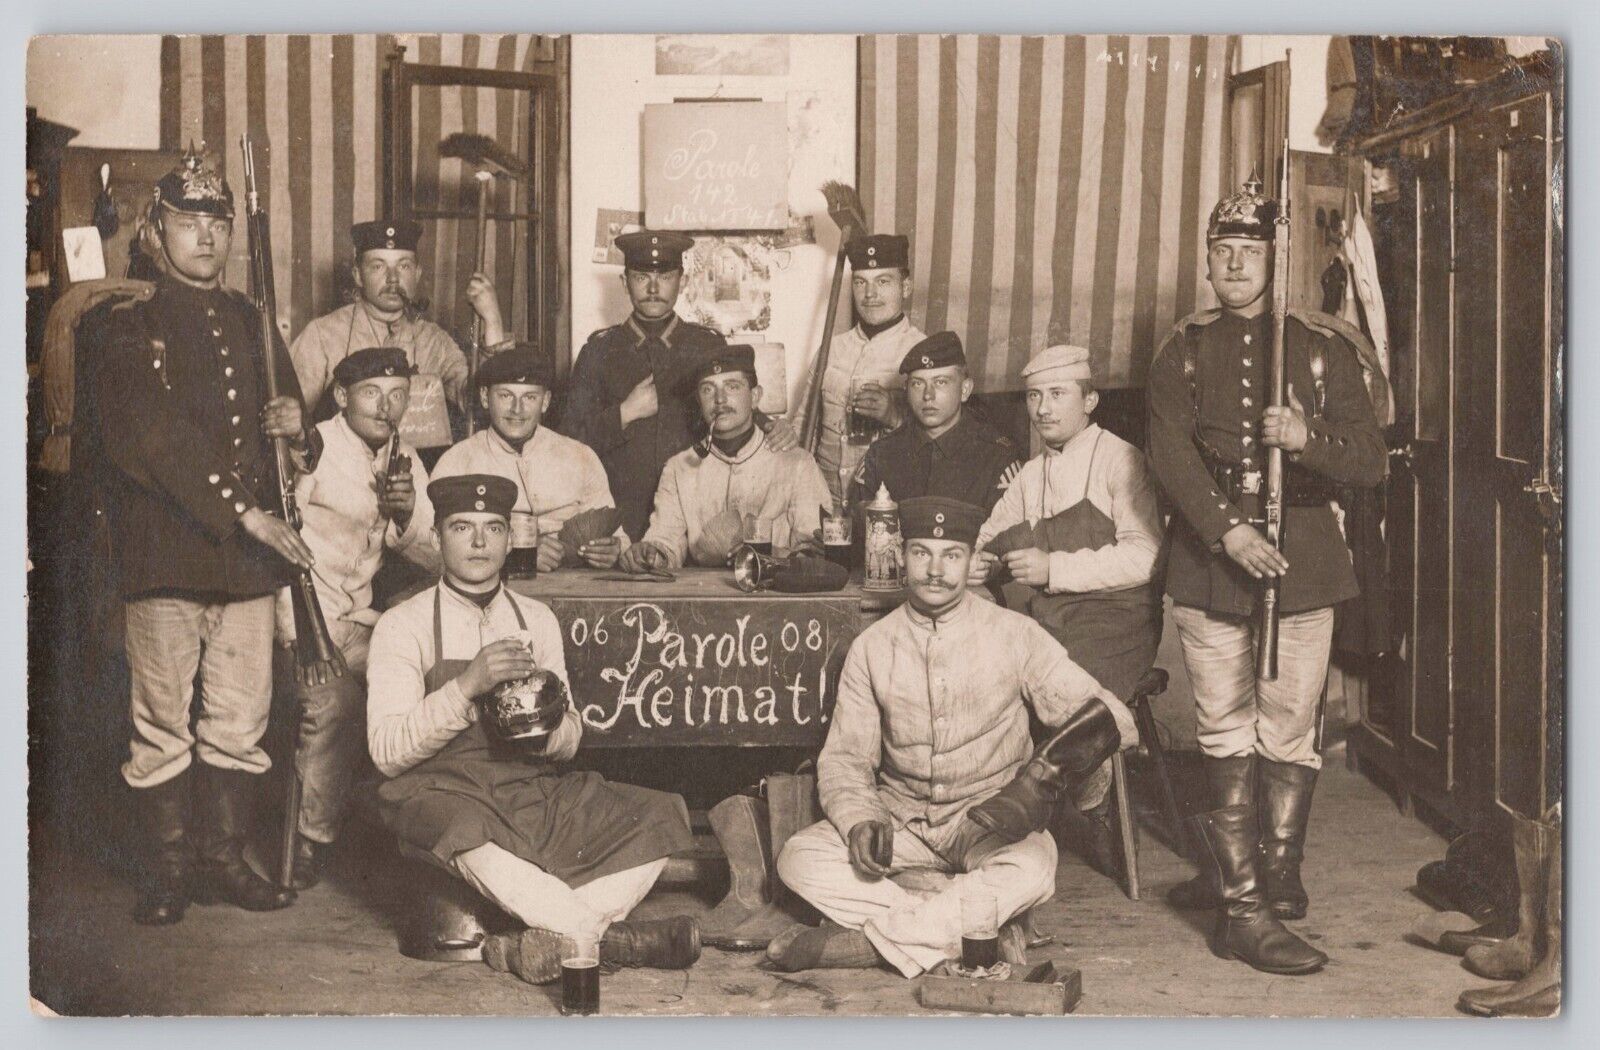 WWI RPPC German Soldiers Barracks Foolery Postcard Flags & Helmets